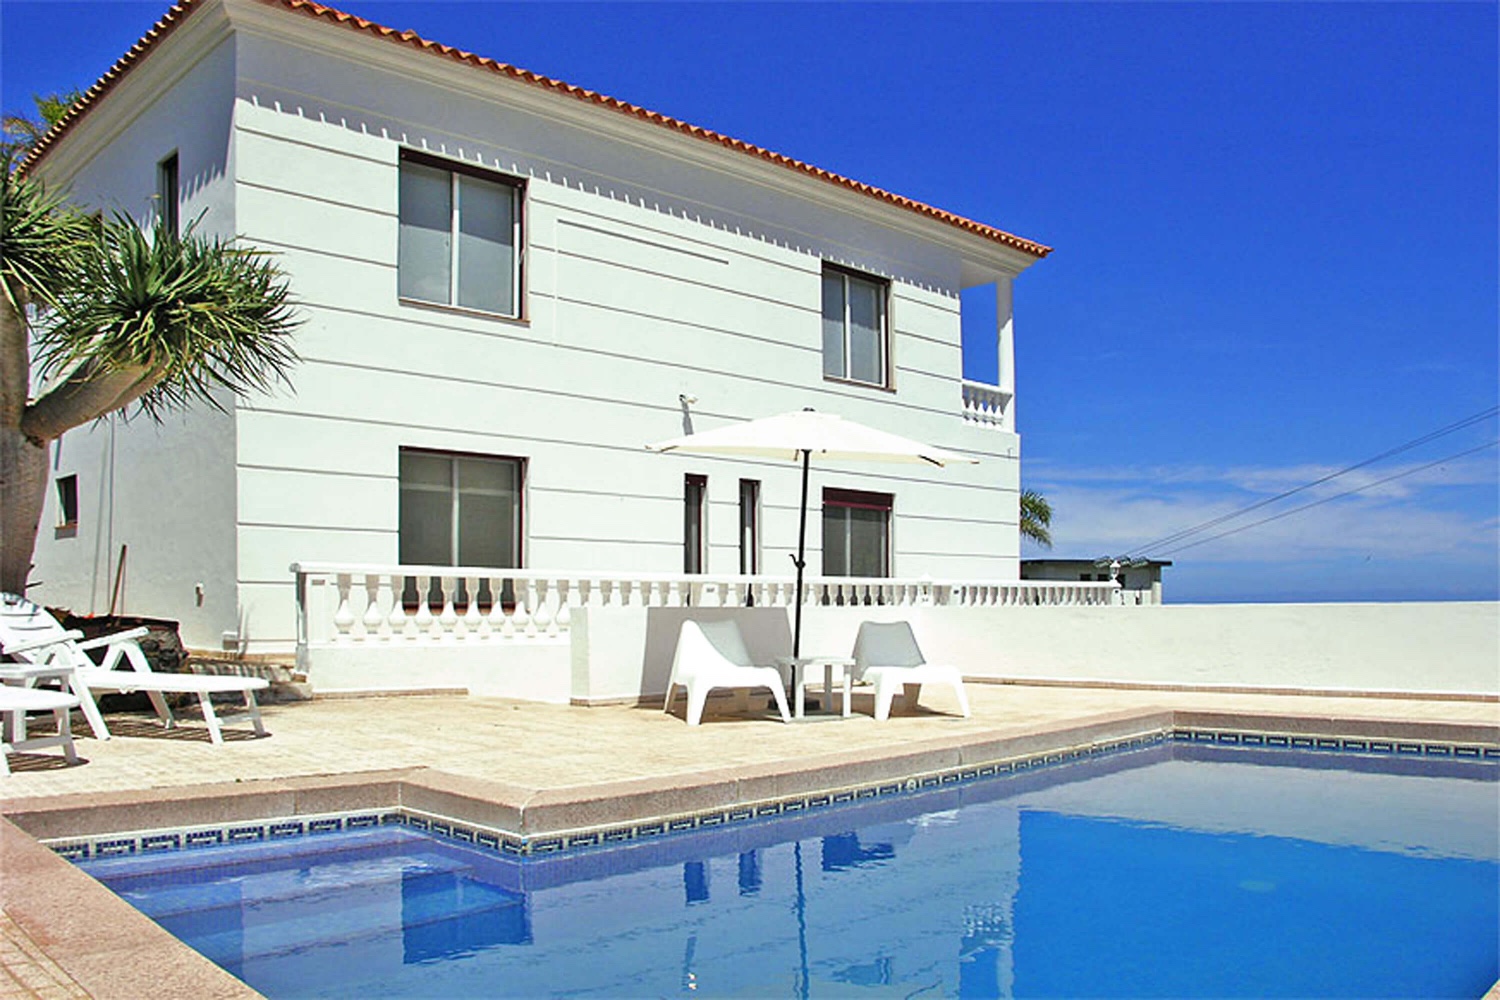 Moderne feriehus med et stort uteområde å nyte en ferie i Santa Ursula, nord på Tenerife